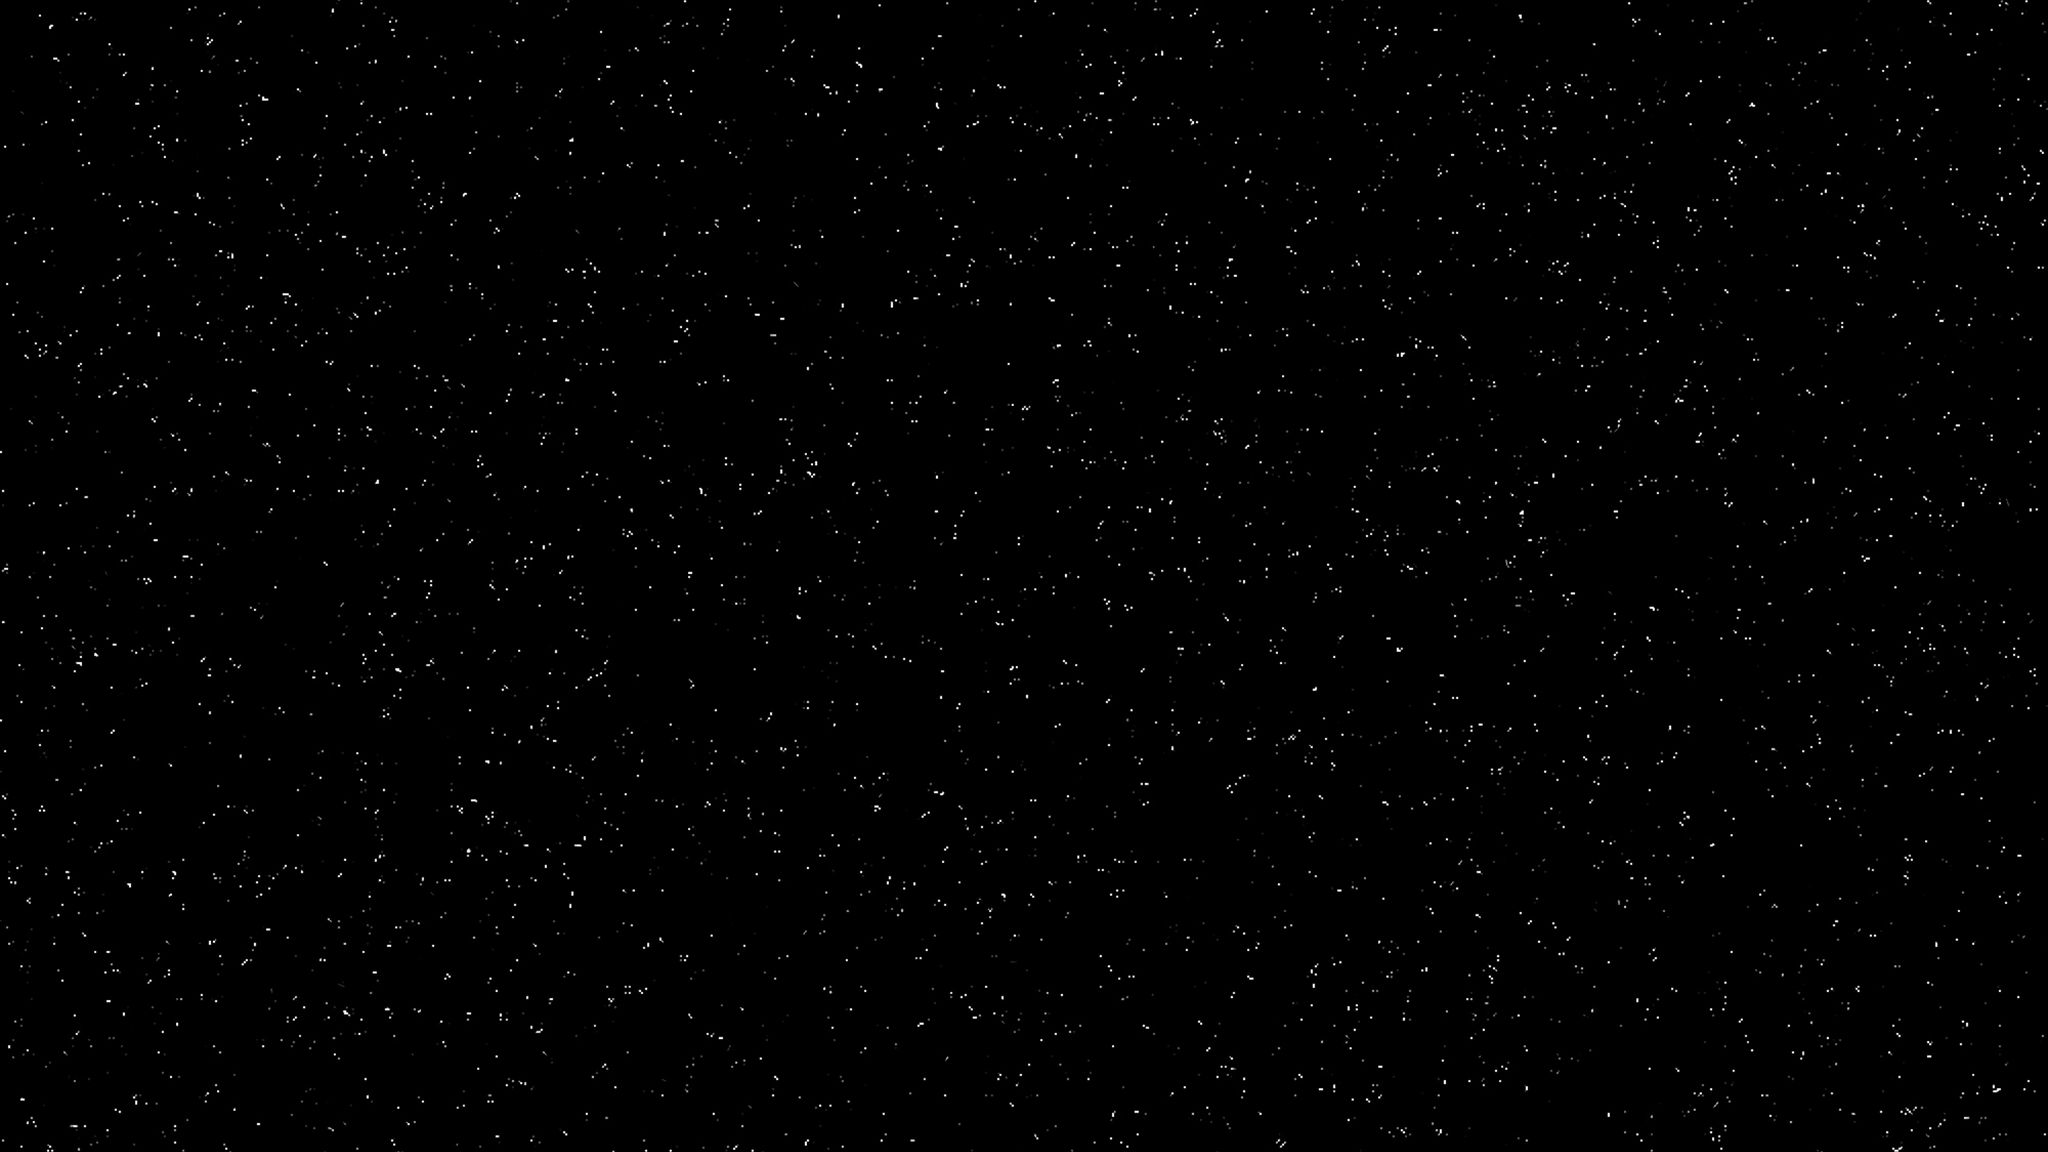 Hình nền vũ trụ đen: Tinh tú trên bầu trời đen đầy bí ẩn và cuốn hút chắc chắn sẽ kích thích trí tưởng tượng của bạn chỉ bằng một cái nhìn vào hình nền vũ trụ đen này. Đẹp và hoàn hảo cho bất kỳ người yêu thích không gian ngoài trái đất nào.